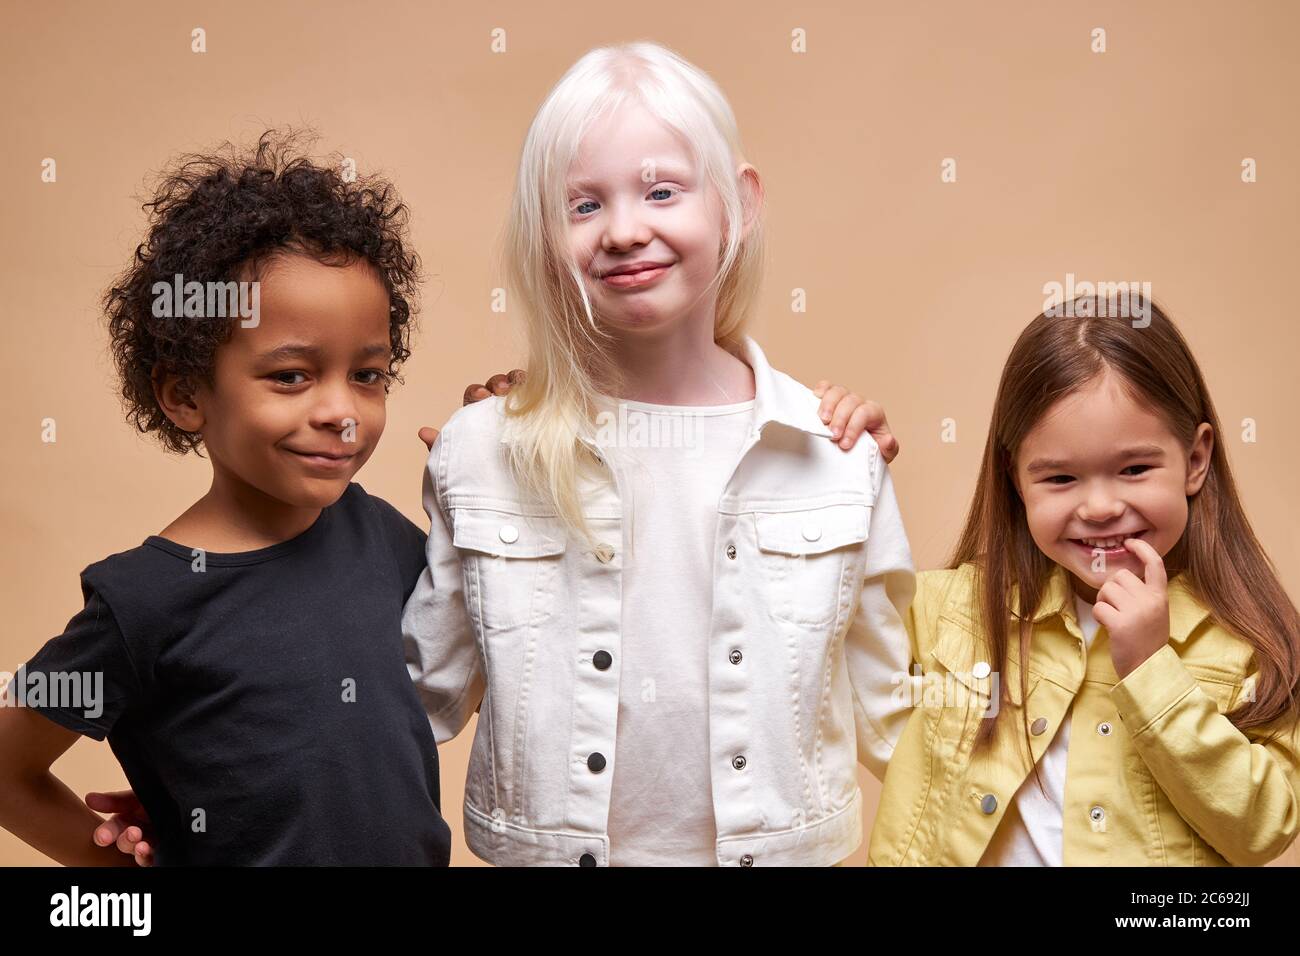 divers souriants positifs enfants posant à la caméra, heureux garçon à la peau sombre et albino, les filles caucasiennes heureux ensemble, amitié internationale étroite. Banque D'Images